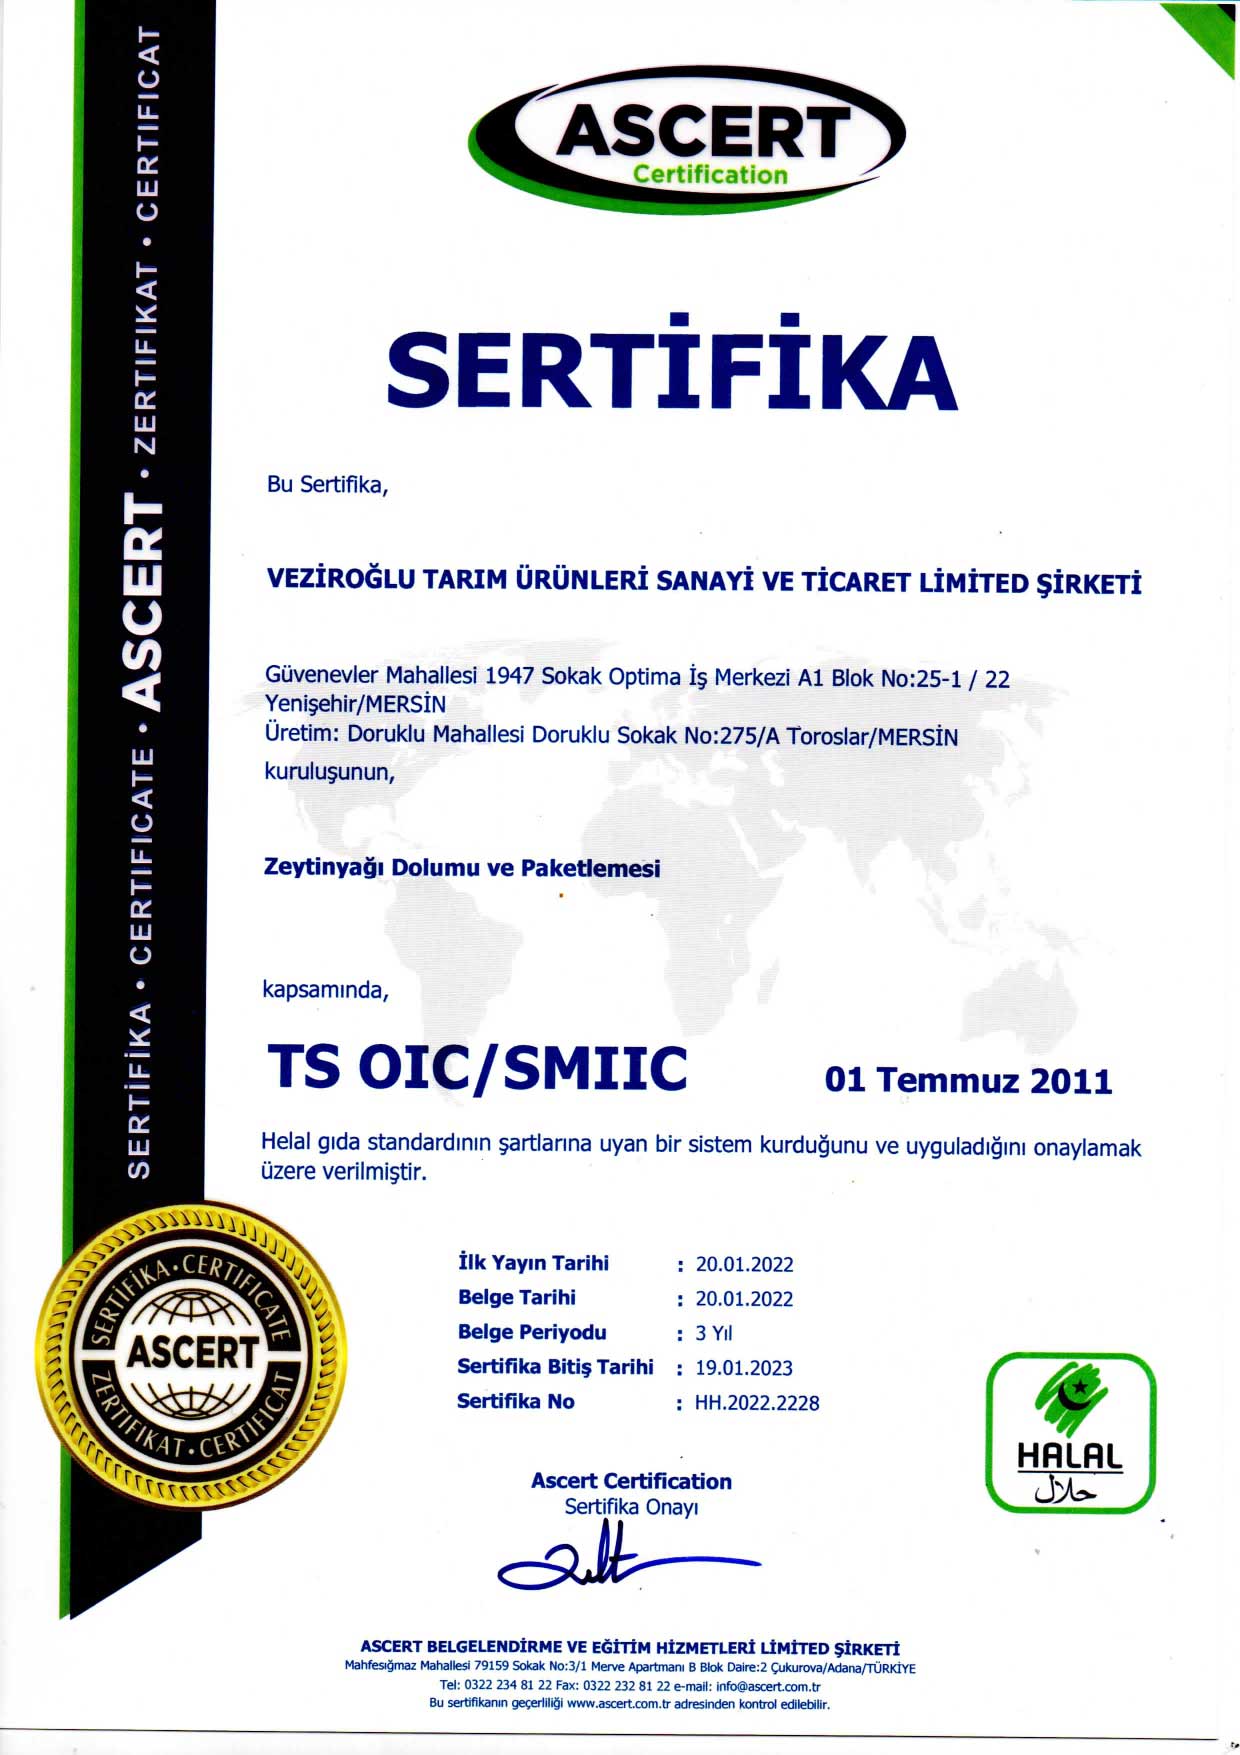 sertifika3.jpg (166 KB)